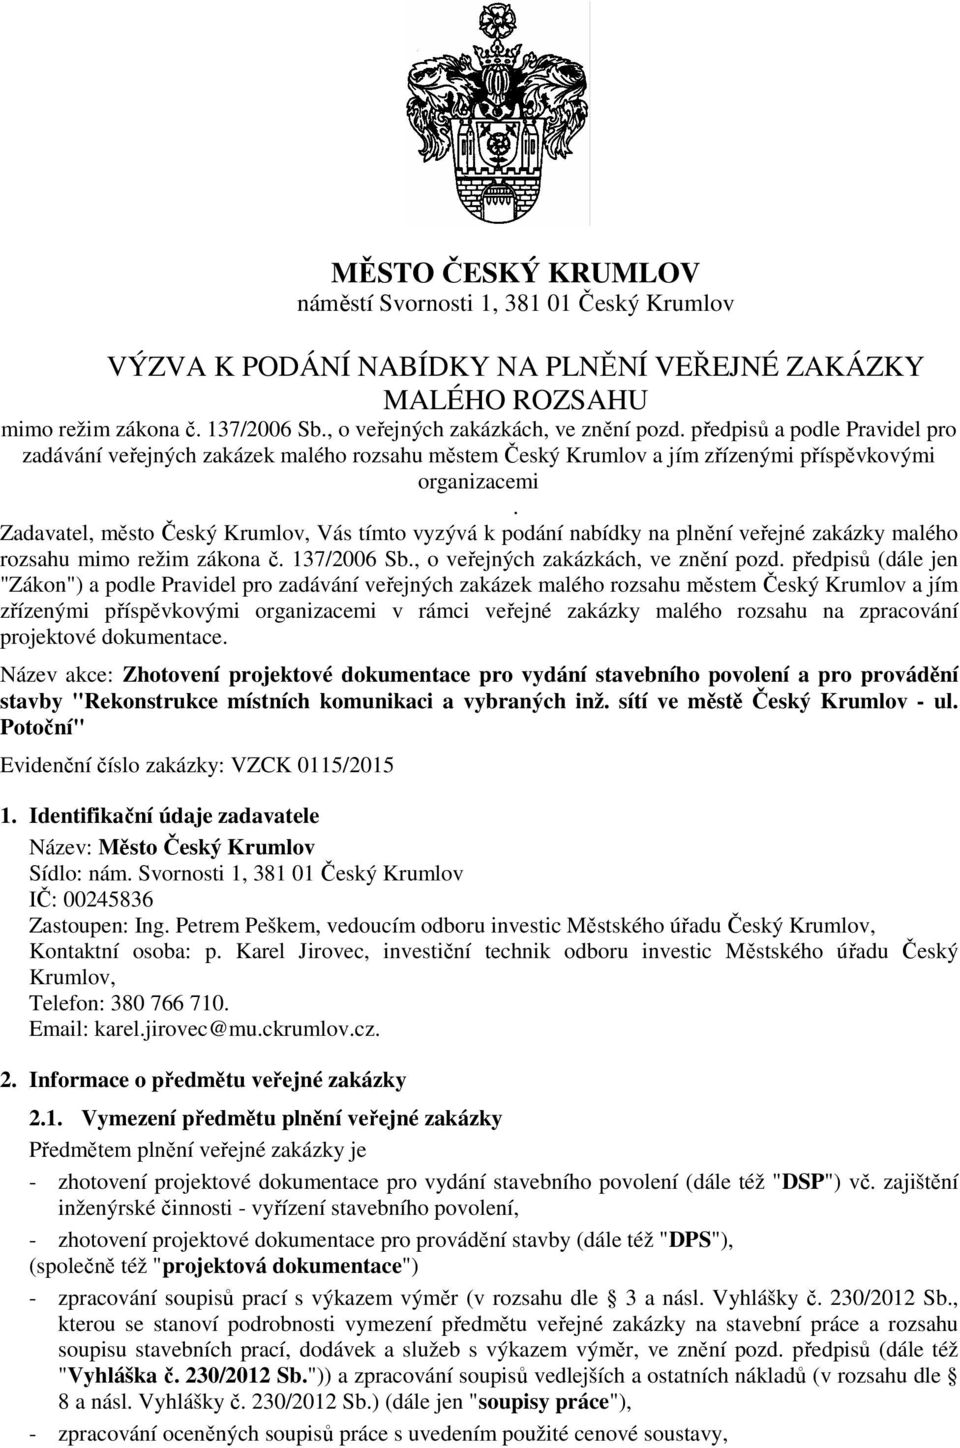 Zadavatel, město Český Krumlov, Vás tímto vyzývá k podání nabídky na plnění veřejné zakázky malého rozsahu mimo režim zákona č. 137/2006 Sb., o veřejných zakázkách, ve znění pozd.